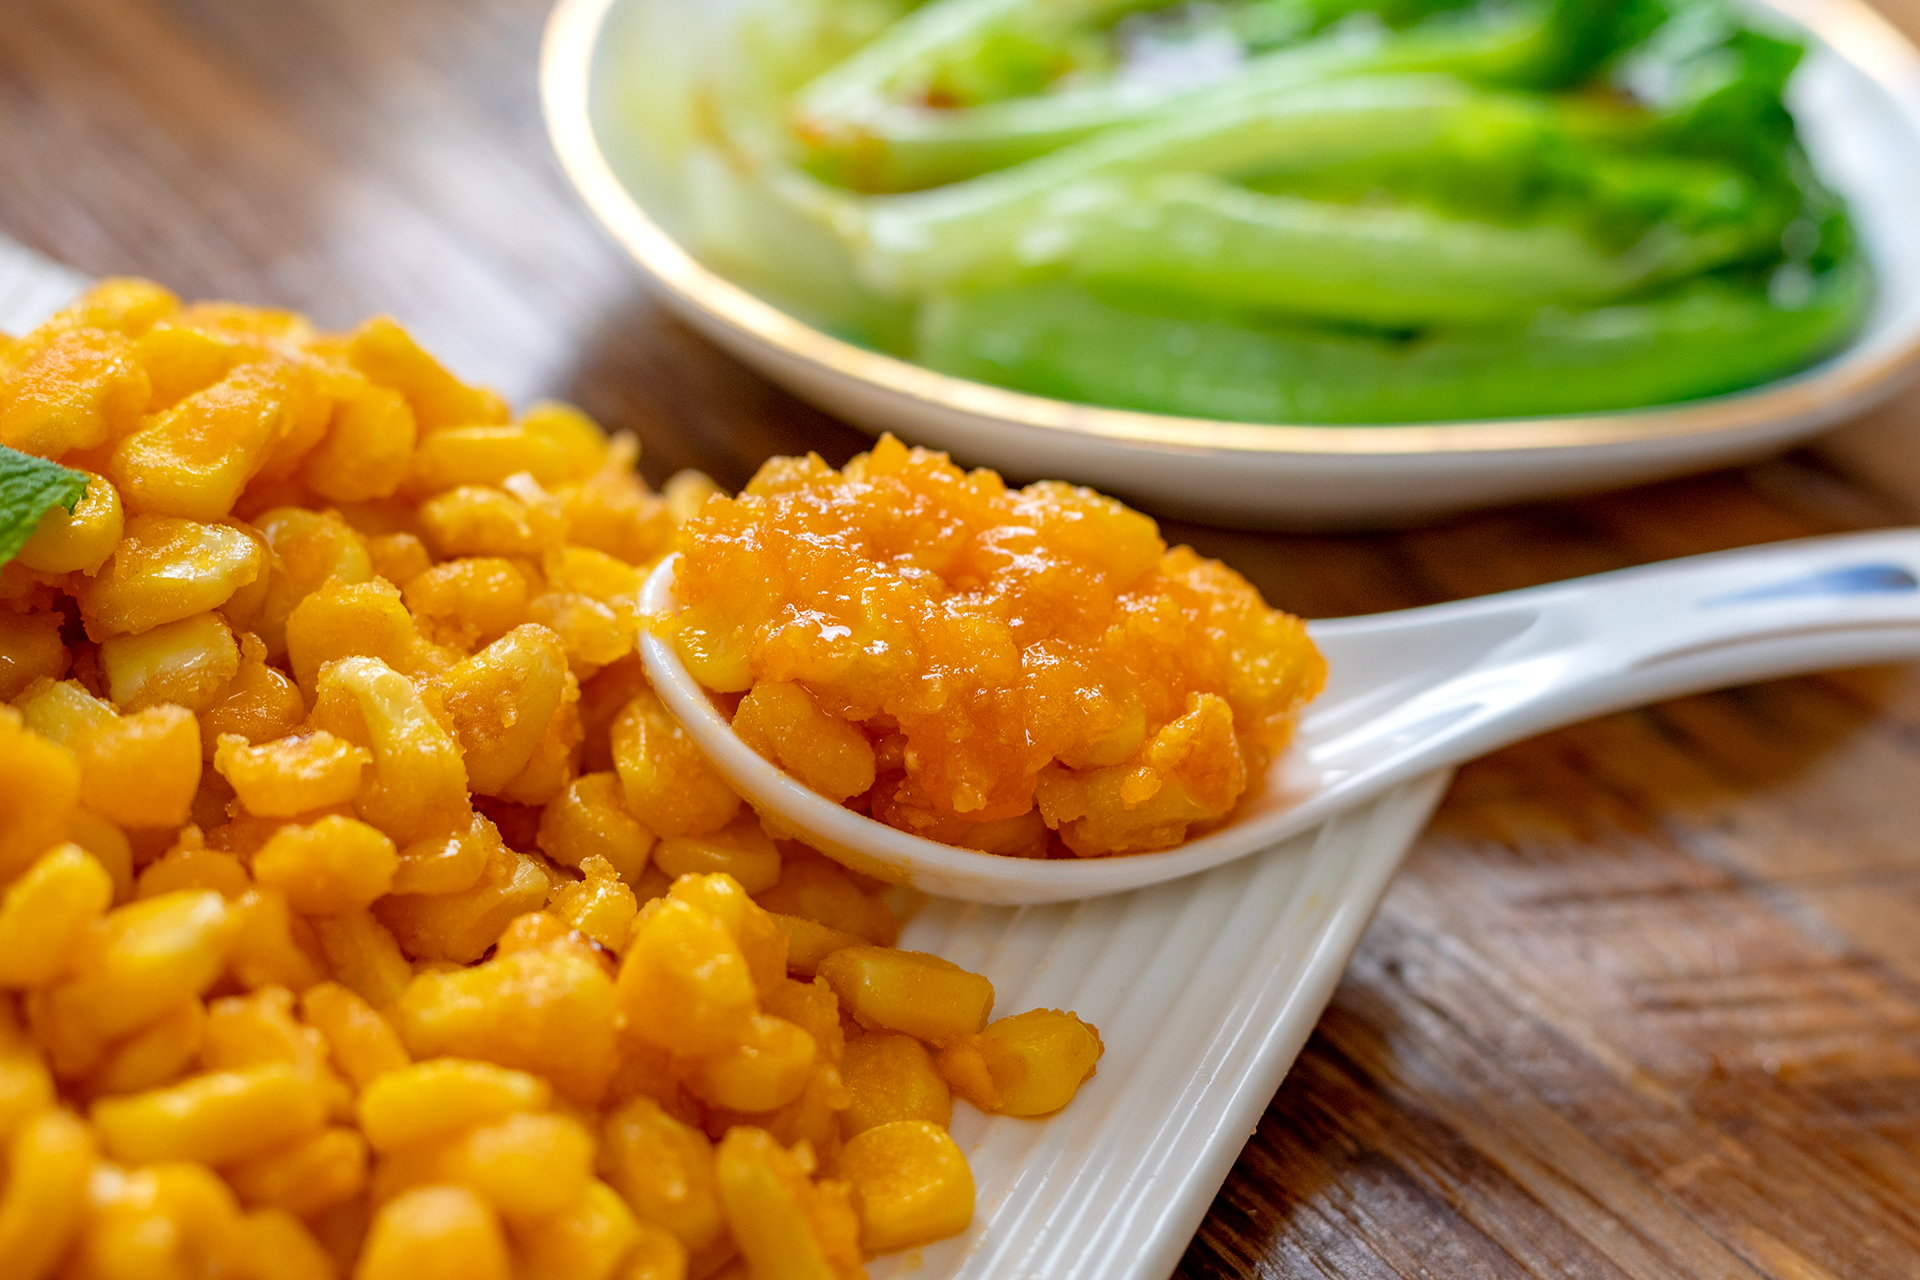 咸蛋黄焗玉米粒图片